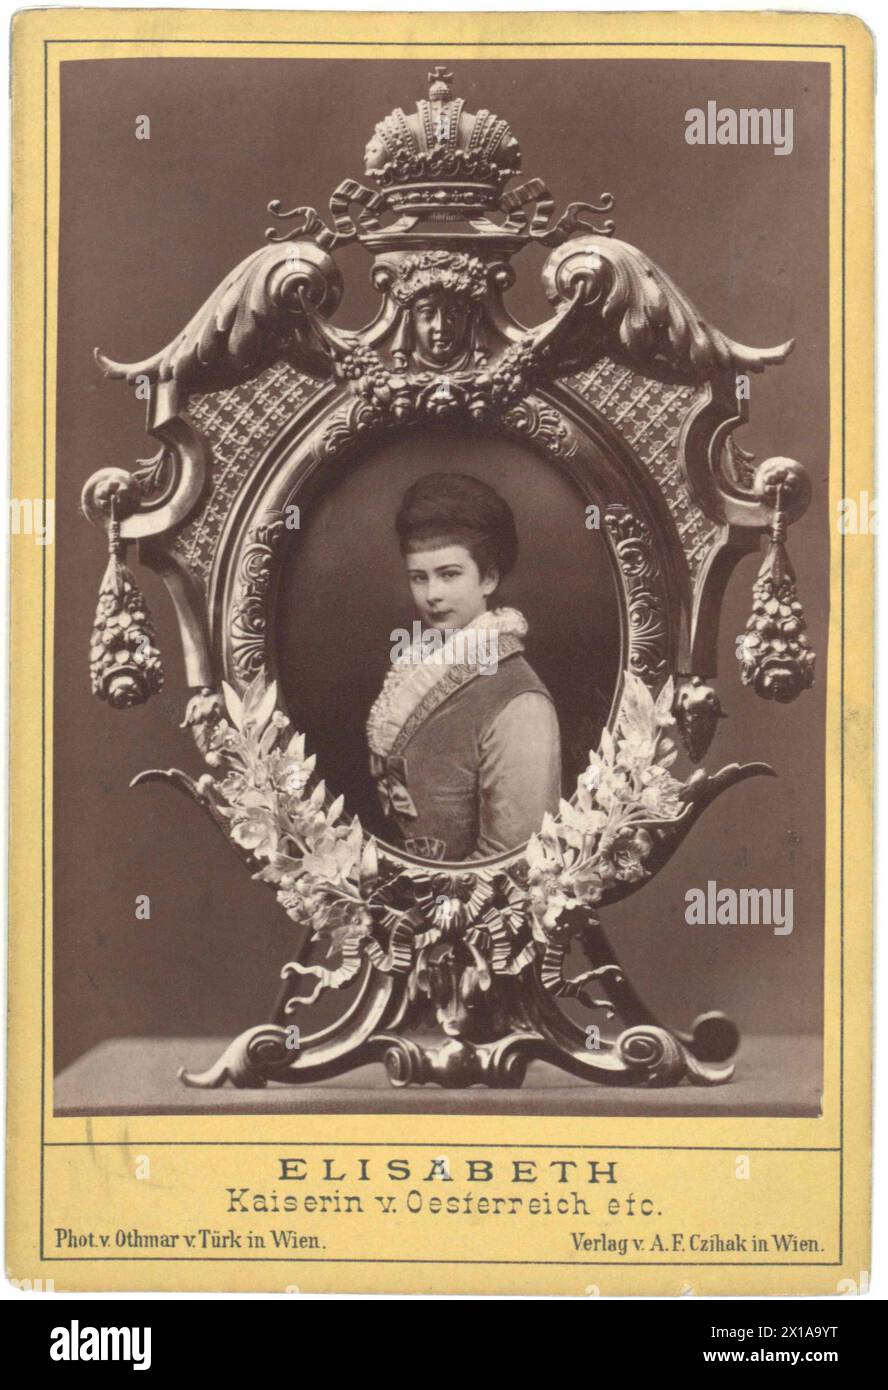 Elisabeth, impératrice d'Autriche, collage de photos avec reproduction basée sur la peinture de Georg Raab dans des cadres. Vente par A. F. Czihak., 1874 - 18740101 PD0060 - Rechteinfo : droits gérés (RM) Banque D'Images